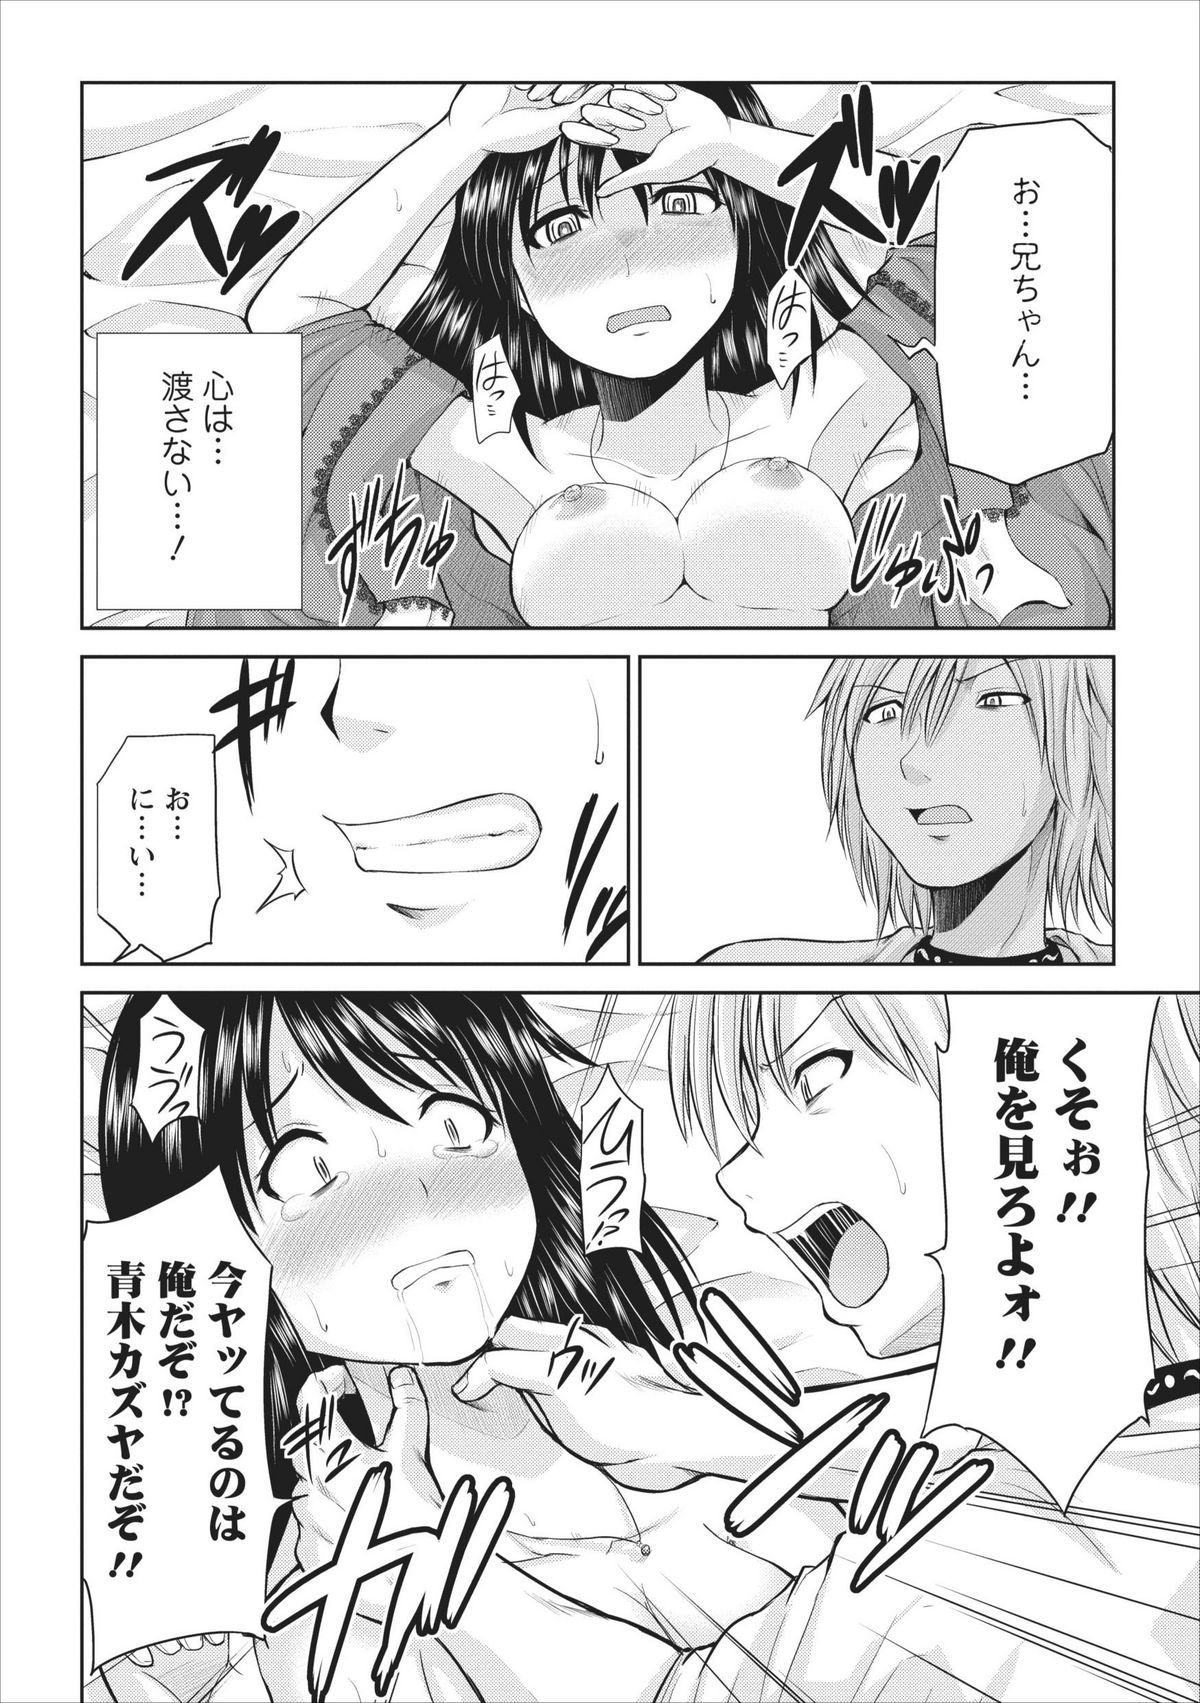 [Yano Toshinori] Tasukete... Onii-chan...! ch.2 page 12 full